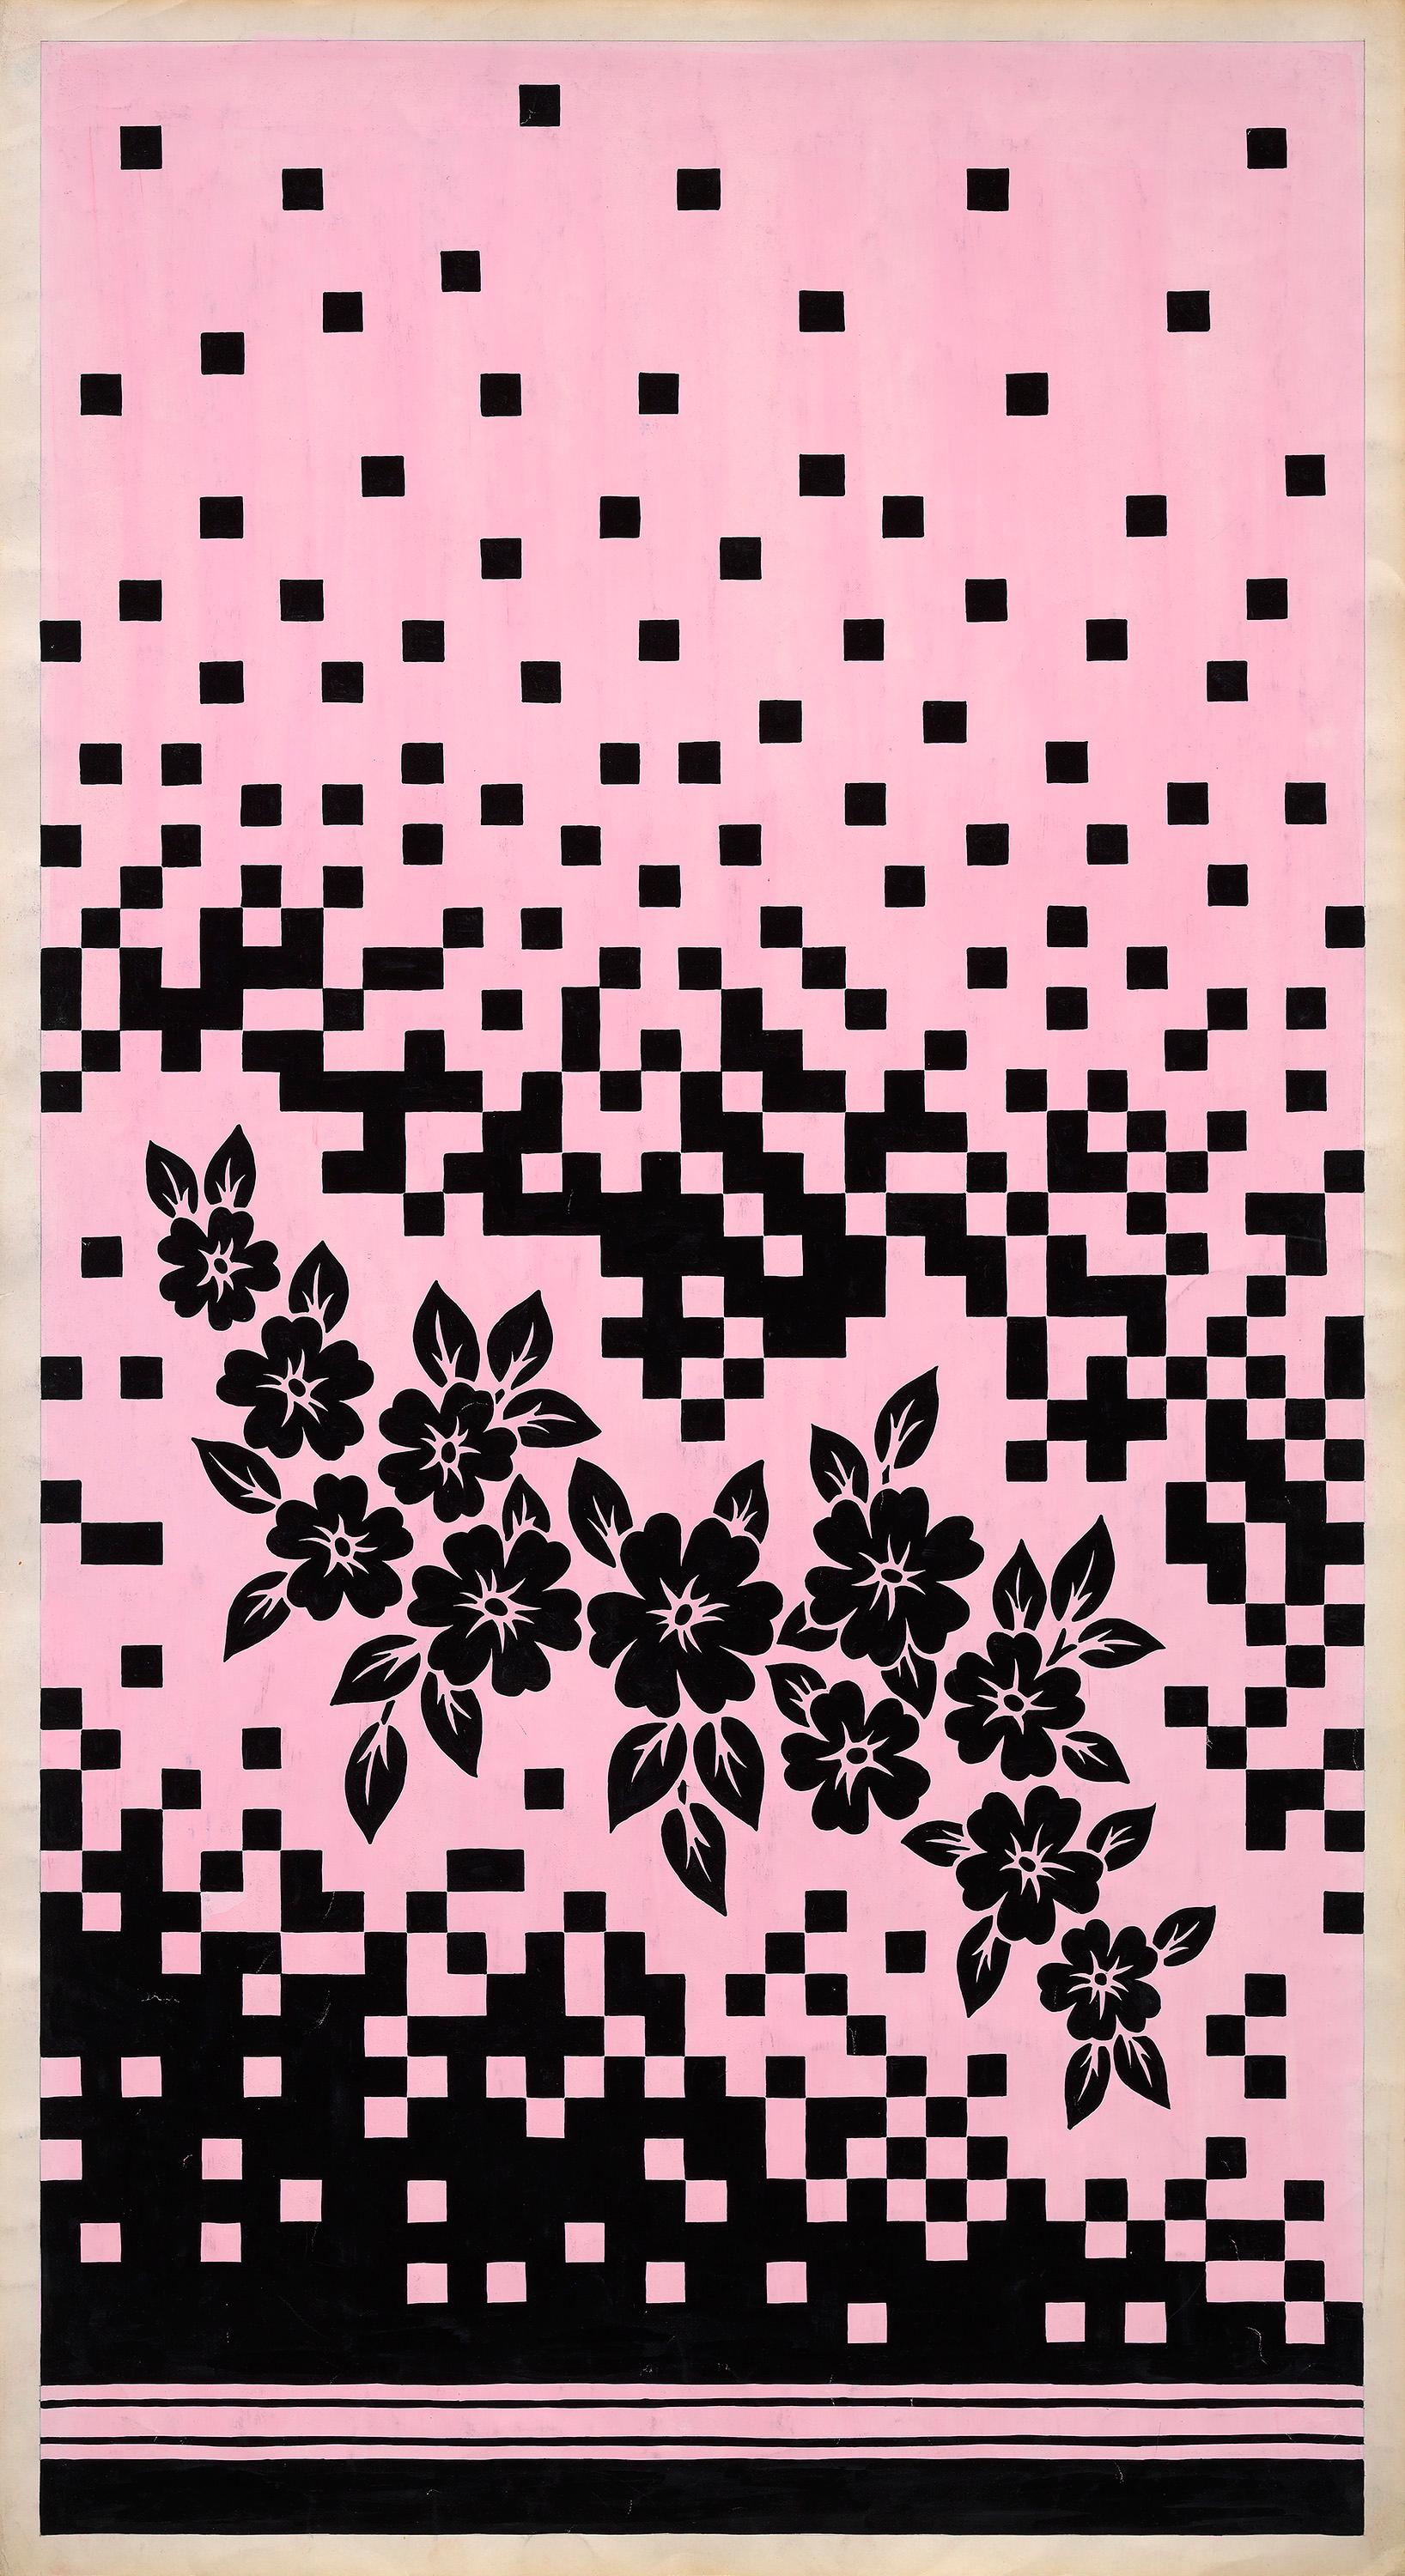 Still-Life Unknown - Conception textile originale des années 70 peinte à la main à la gouache, couleur rose et noire sur papier